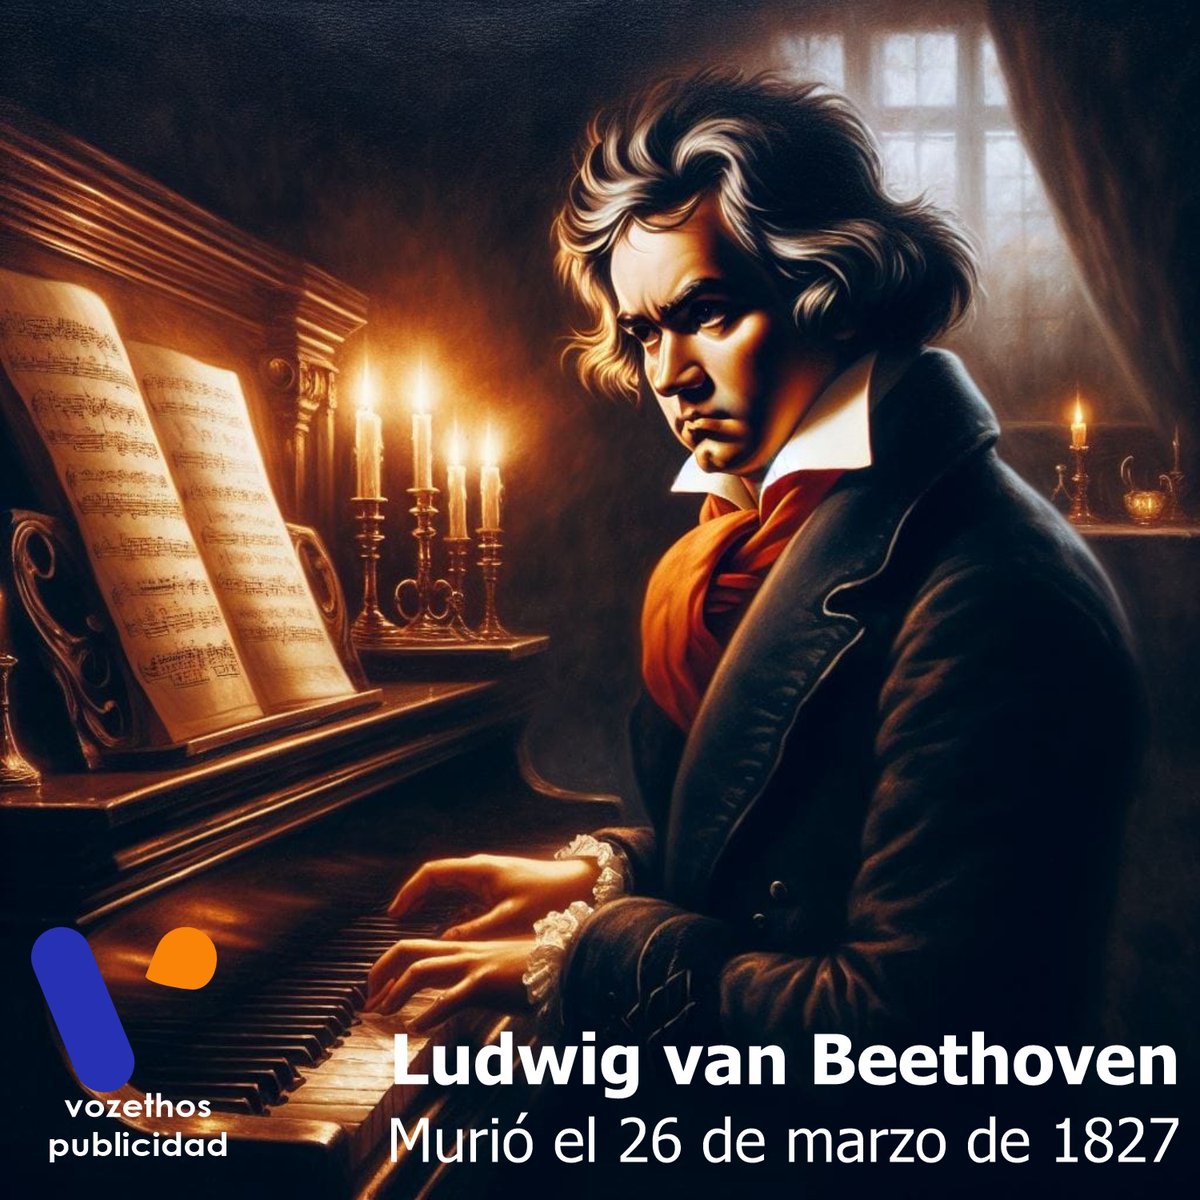 Beethoven murió el 26 de marzo de 1827, fue un compositor alemán de música clásica y romántica.  Famoso sobre todo por sus nueve sinfonías, conciertos para piano, sonatas para piano y cuartetos de cuerda. #beethoven #musica #symphony9 @vozethos